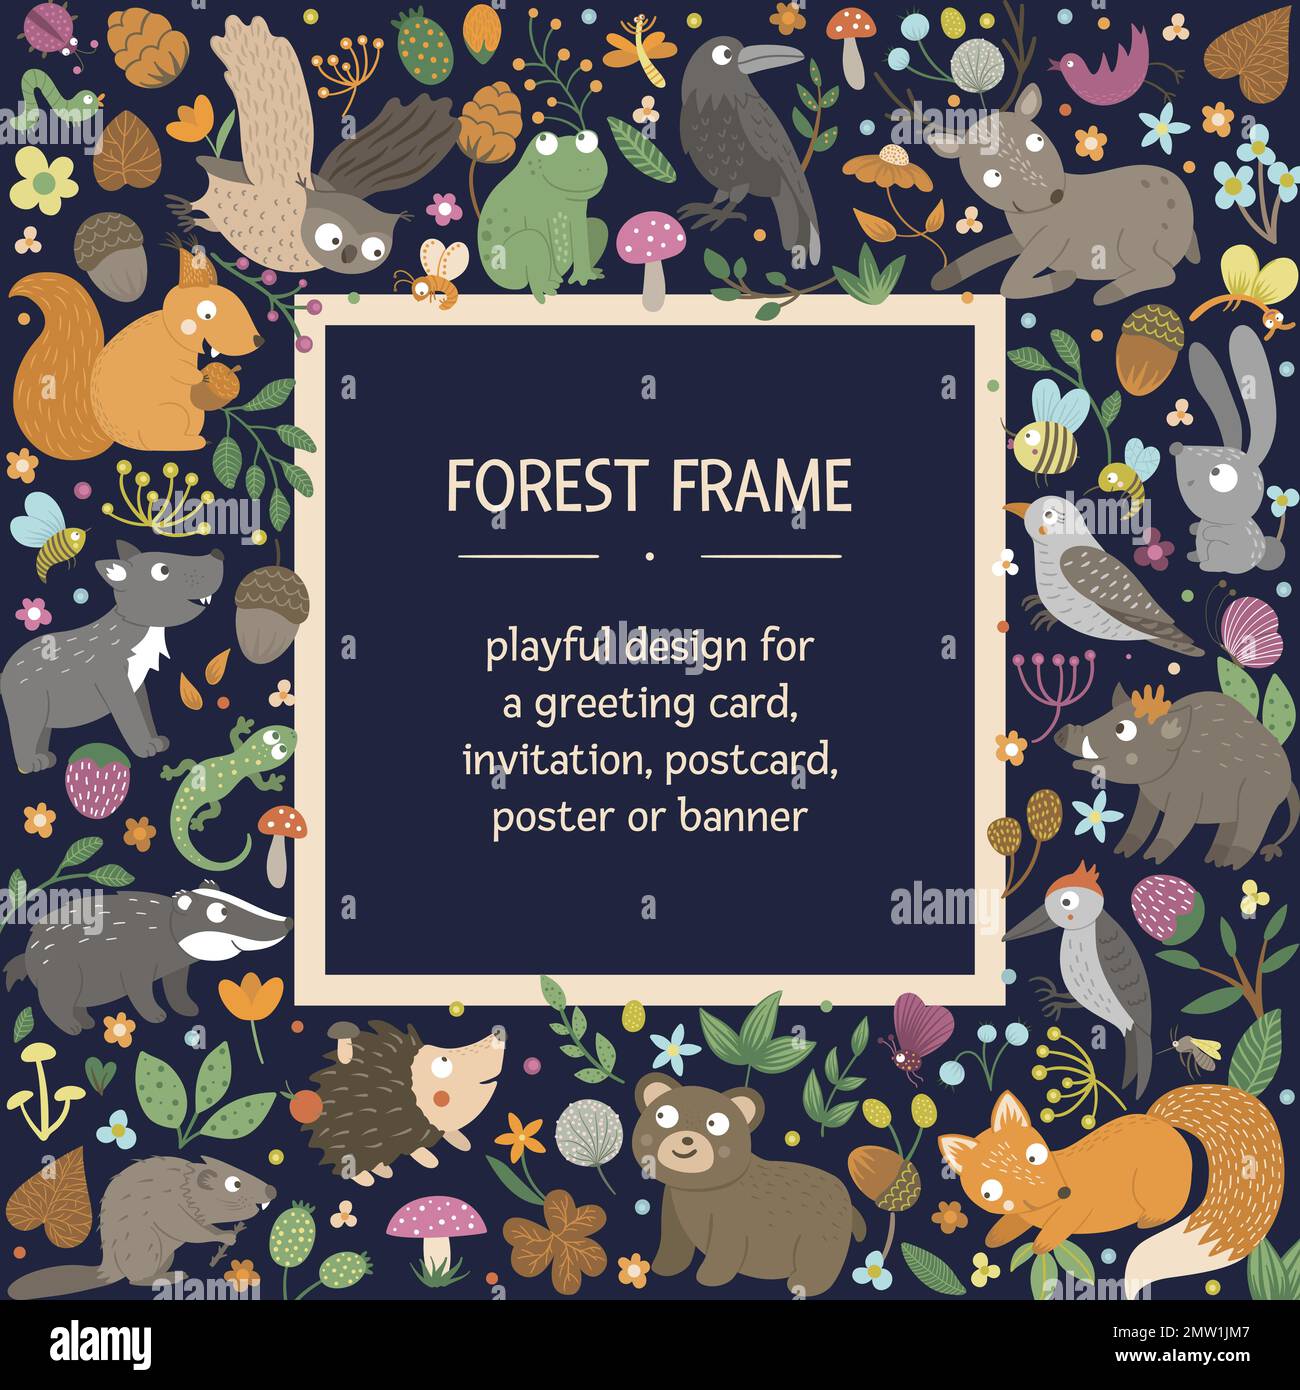 Quadratischer Vektorrahmen mit Tieren und Waldelementen auf schwarzem Hintergrund. Banner mit natürlichem Thema. Süße lustige Waldkarten-Vorlage. Stock Vektor